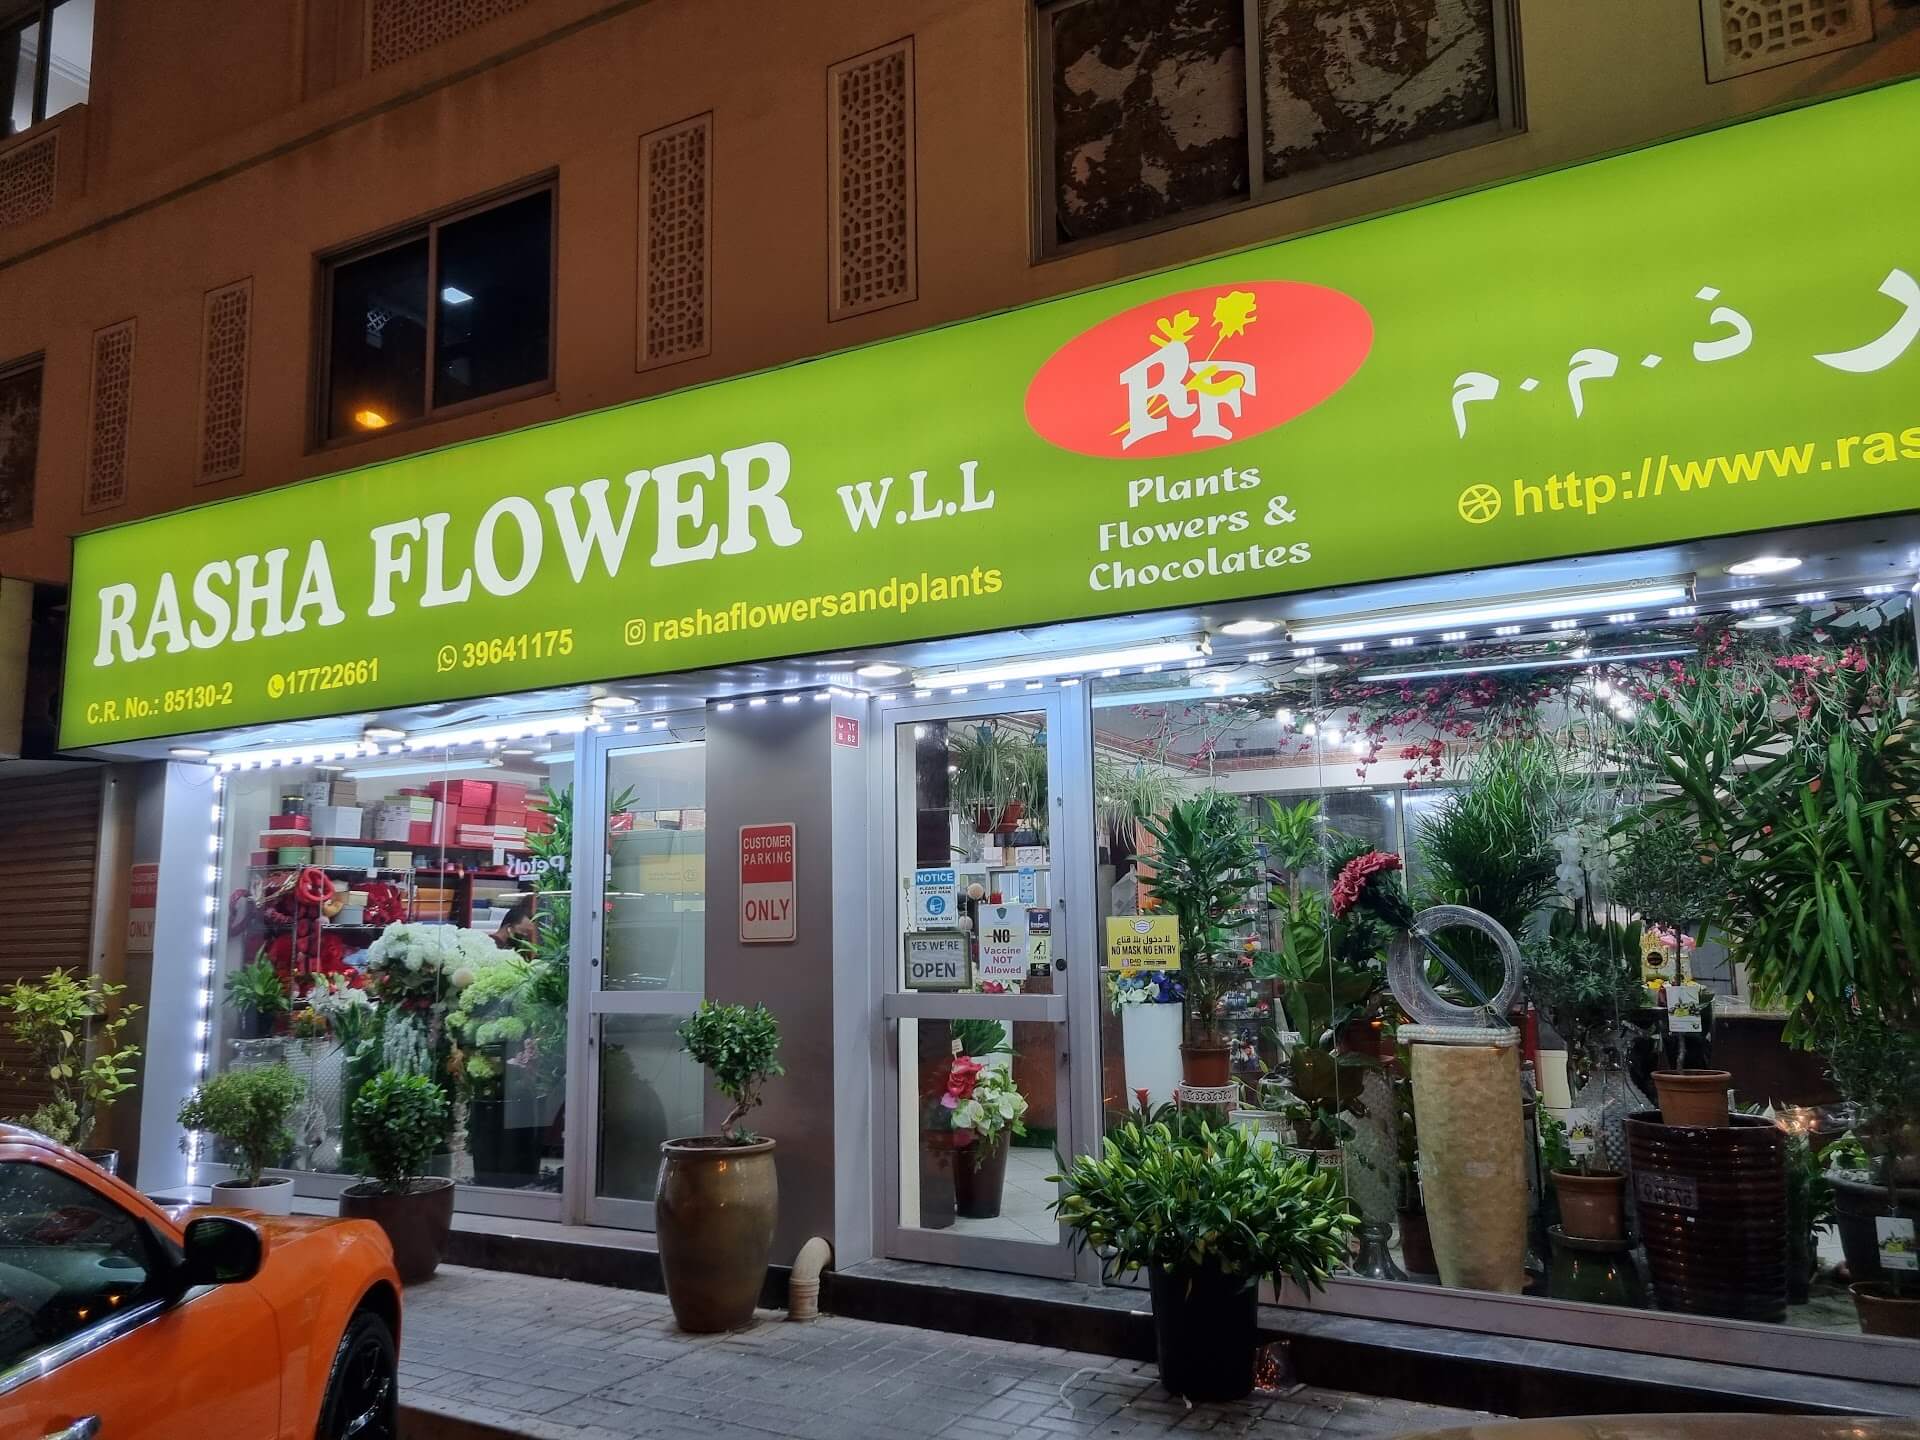 Rasha Flower W.L.L.